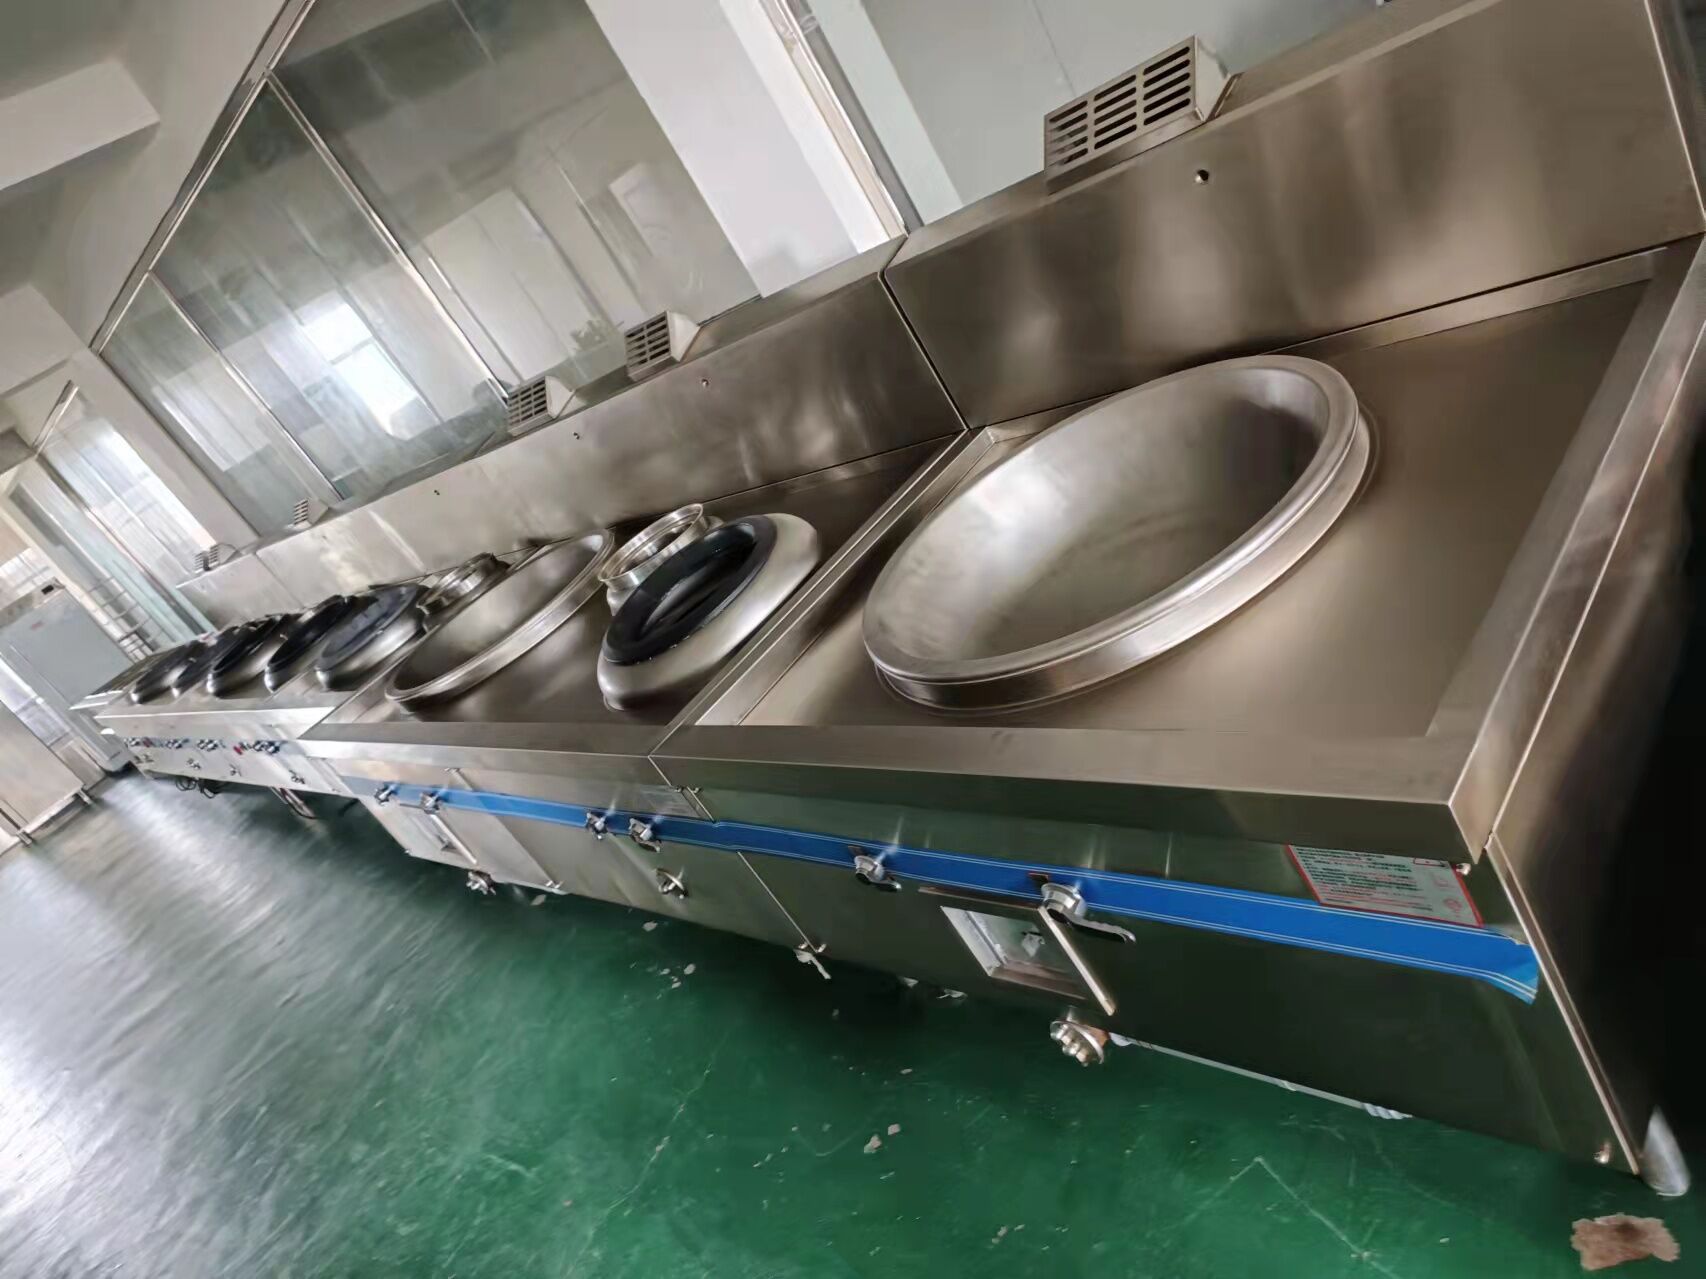 广州市广核机关食堂成套商用厨房设备工程项目设计安装